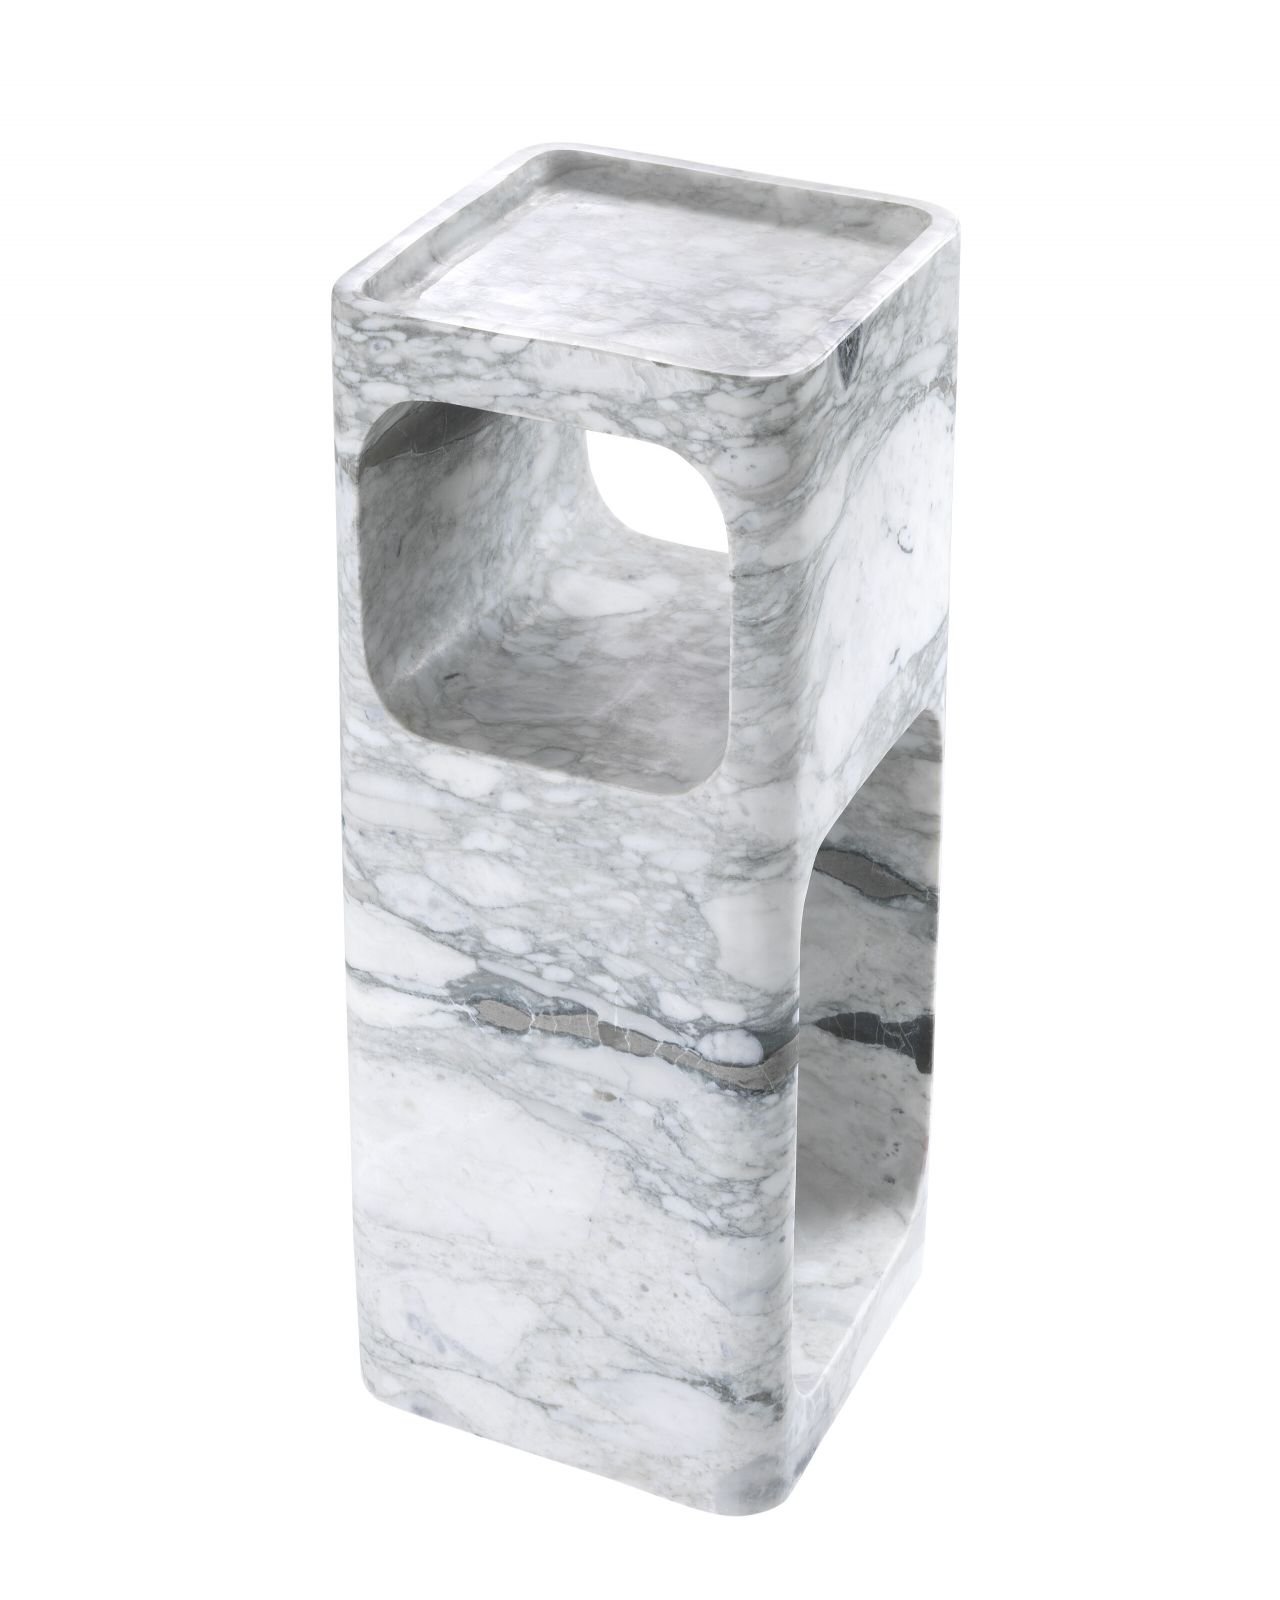 Adler sidebord white marble